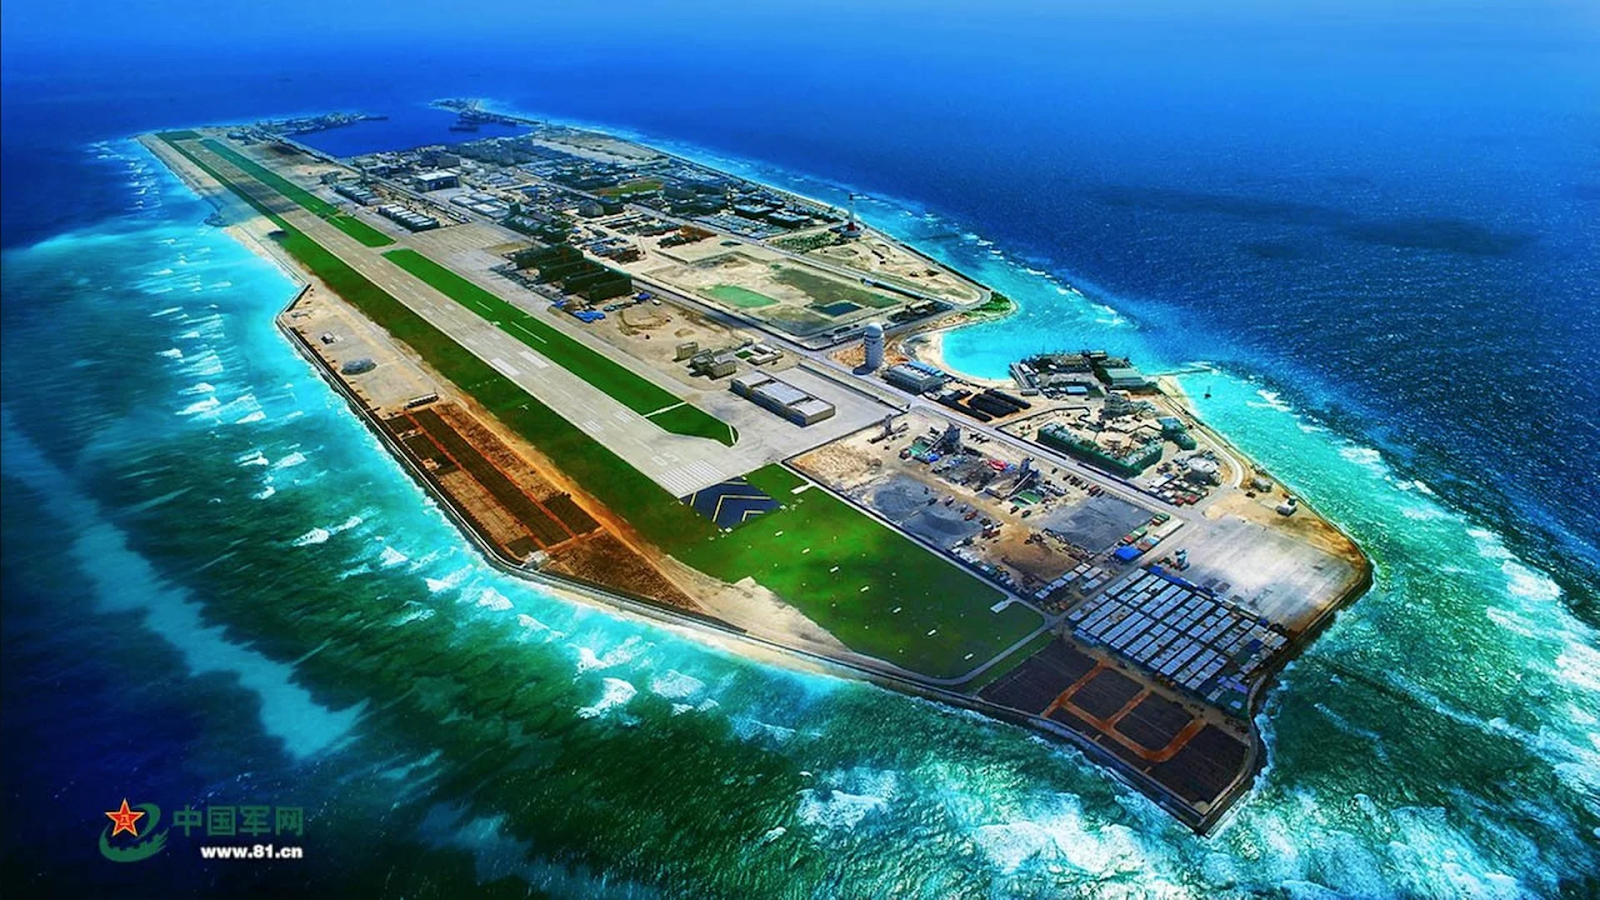 TNI : China Punya Pulau Buatan di Laut China Selatan - Radar Militer